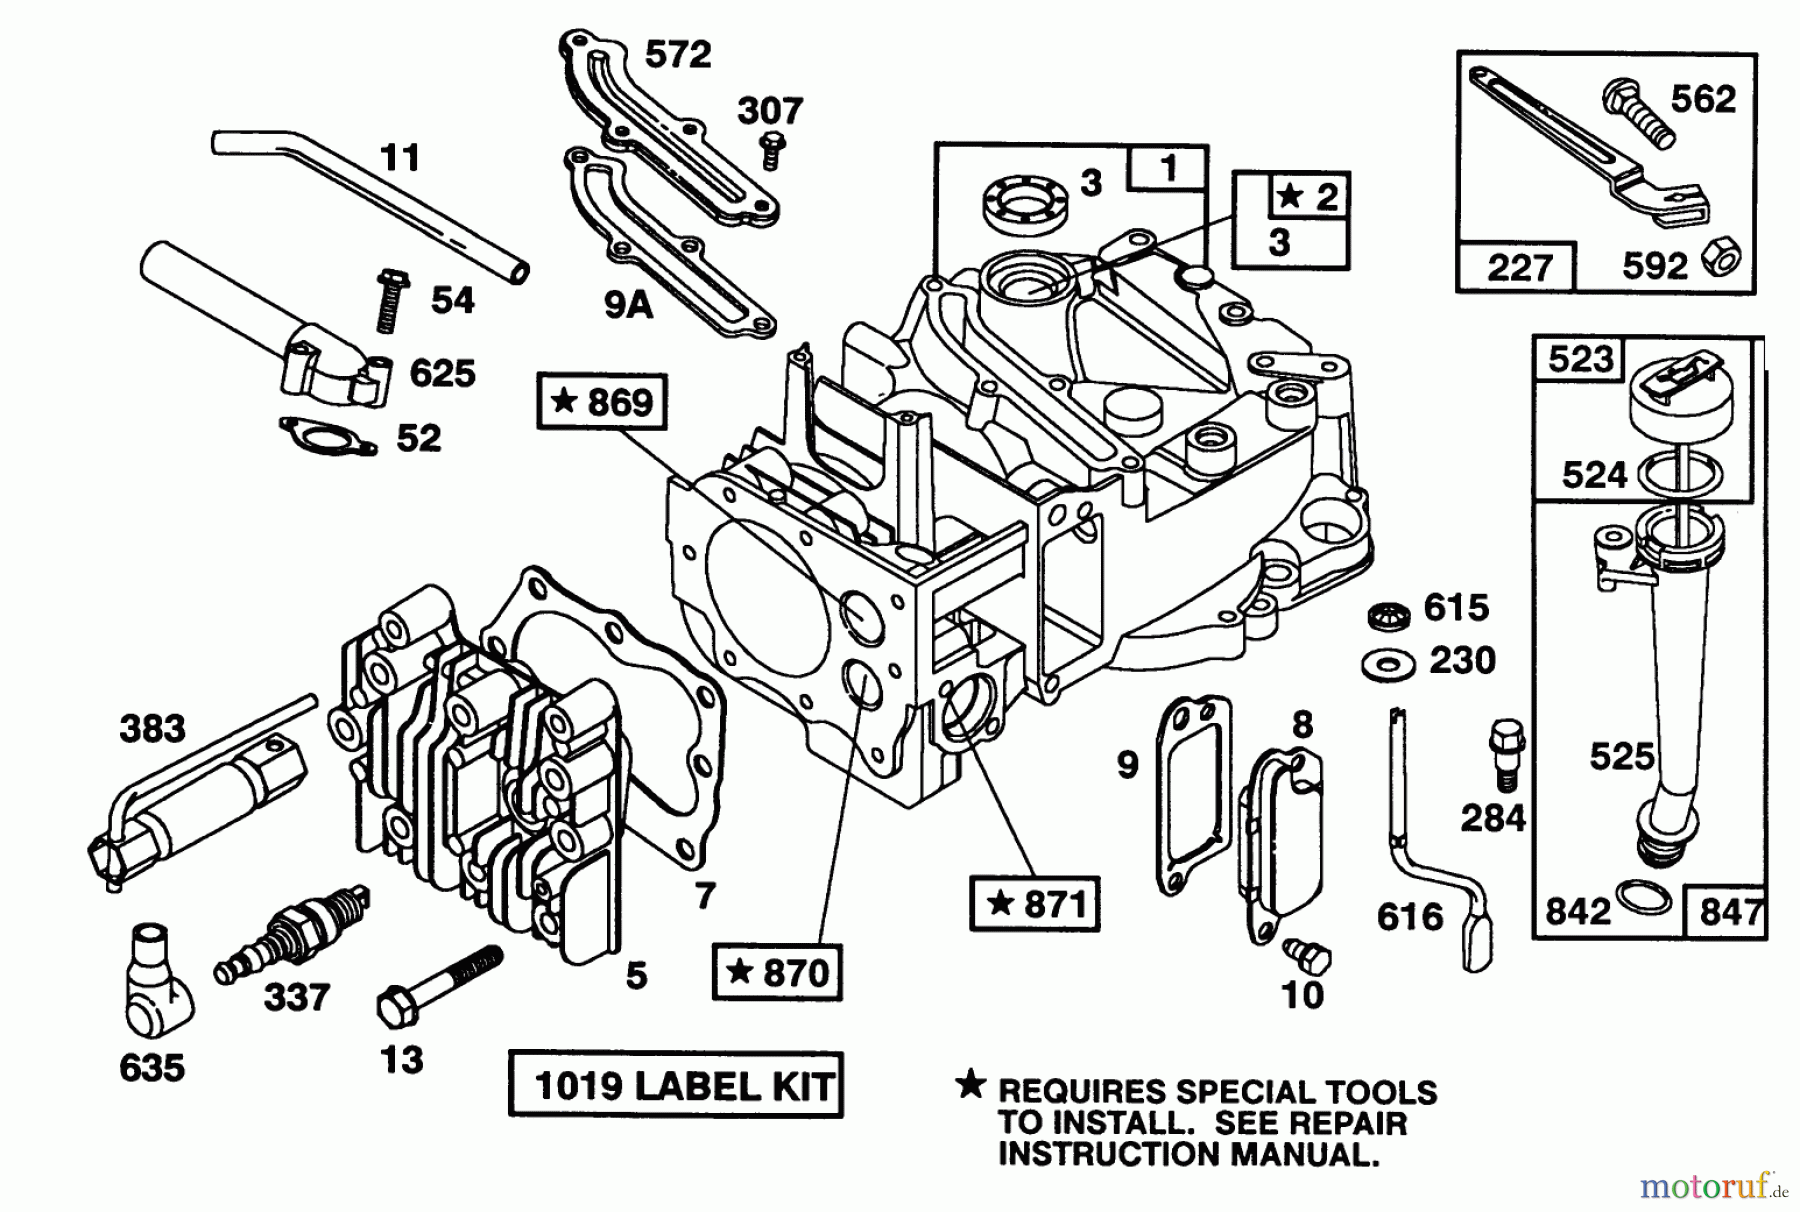  Toro Neu Mowers, Walk-Behind Seite 1 20215 - Toro Lawnmower, 1992 (2000001-2999999) ENGINE BRIGGS & STRATTON MODEL 122702-3171-01 #1